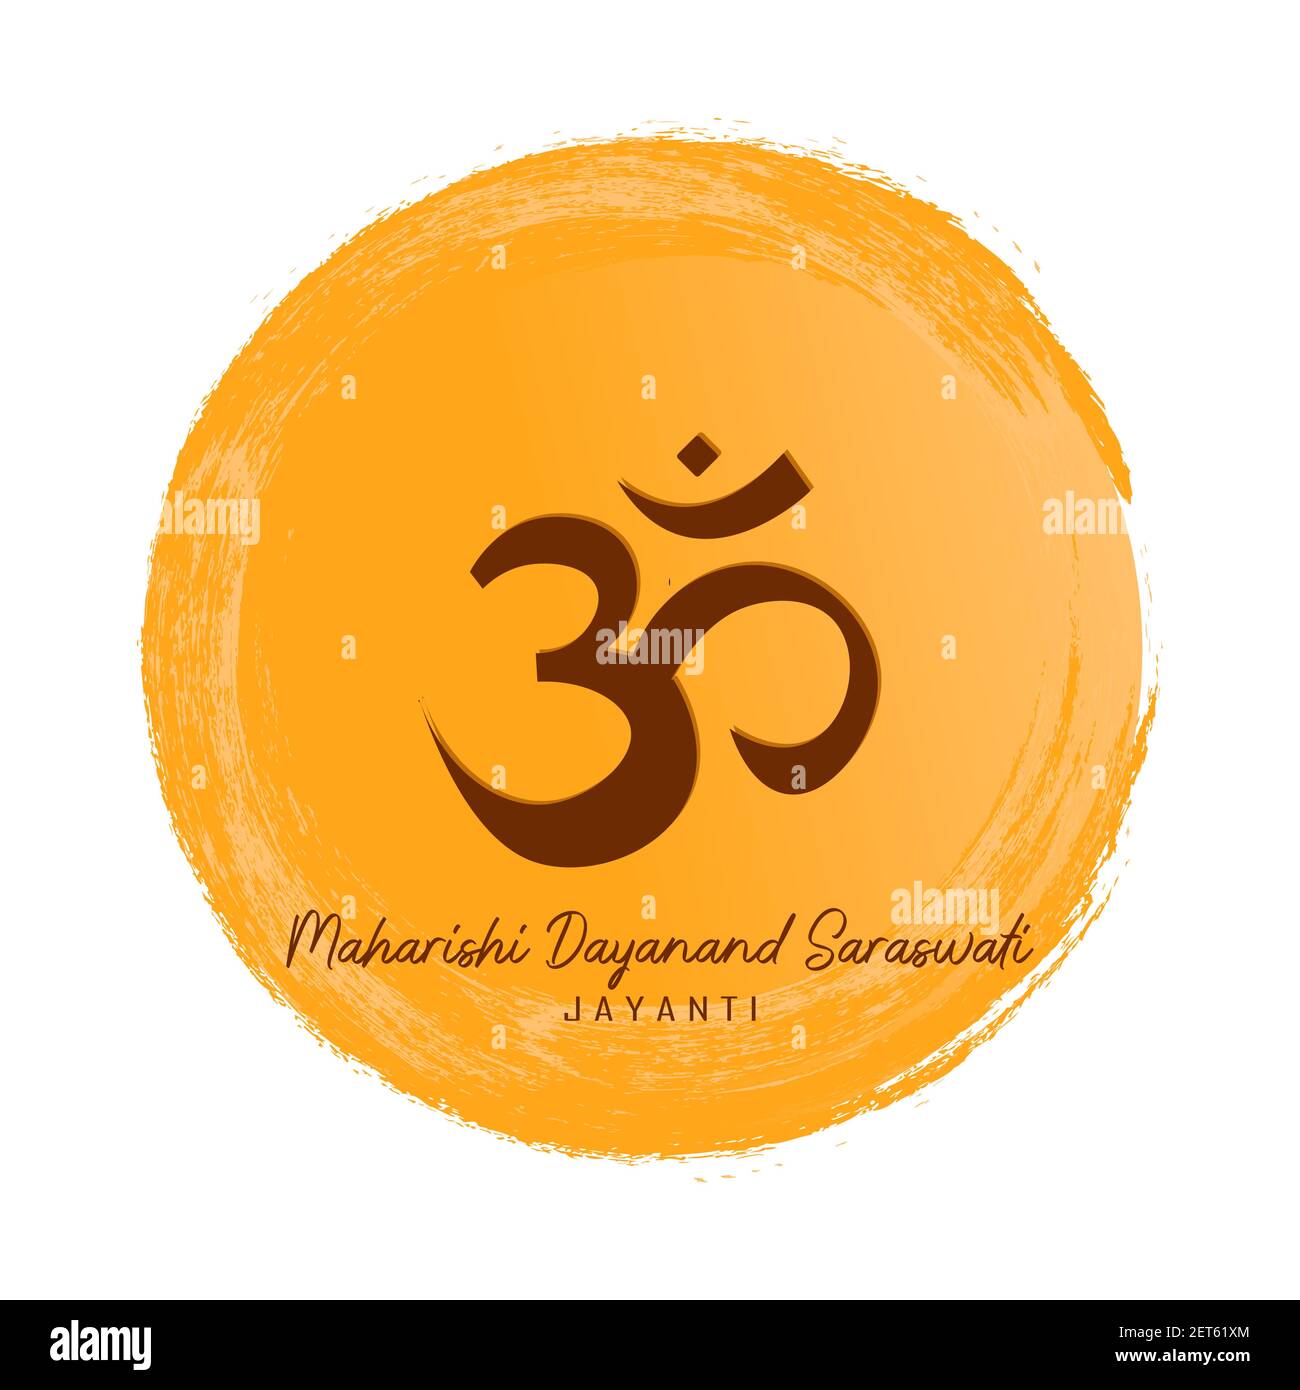 Maharishi Dayanand Saraswati Jayanti. vector illustration with OM symbol Stock Vector